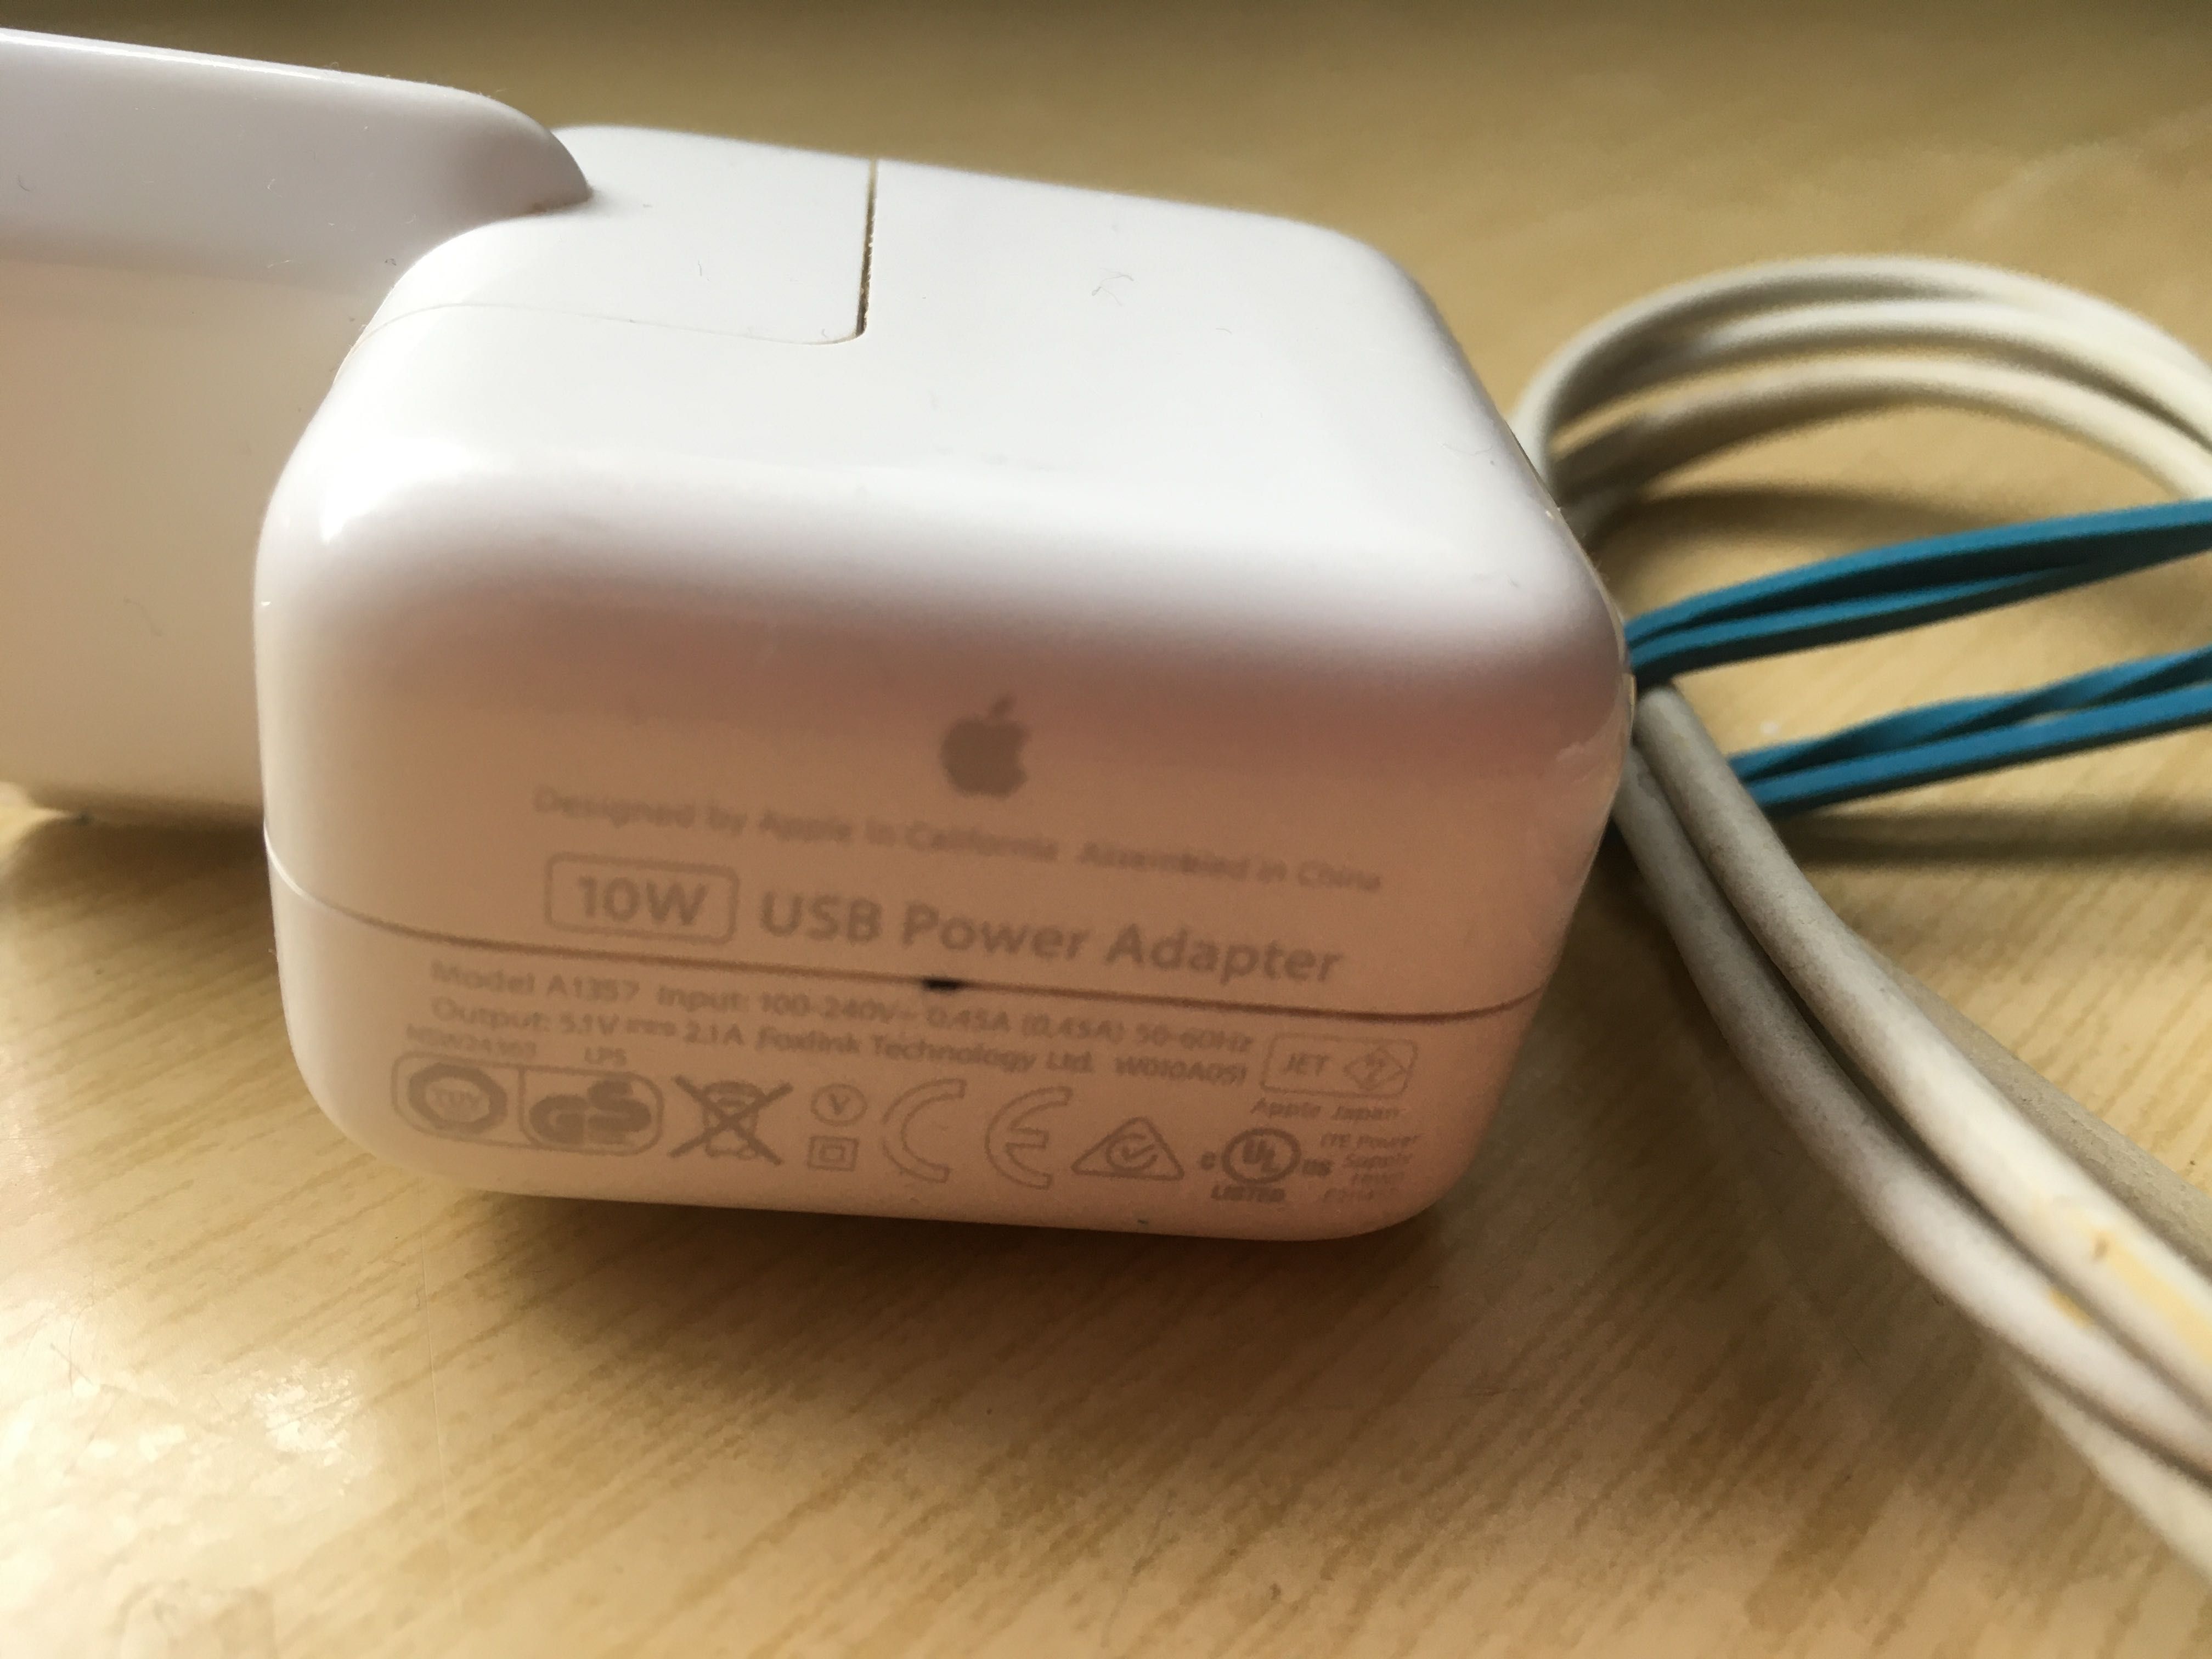 Oryginalna ładowarka 10w dla iPhone iPad + oryginalny Lightning kabel